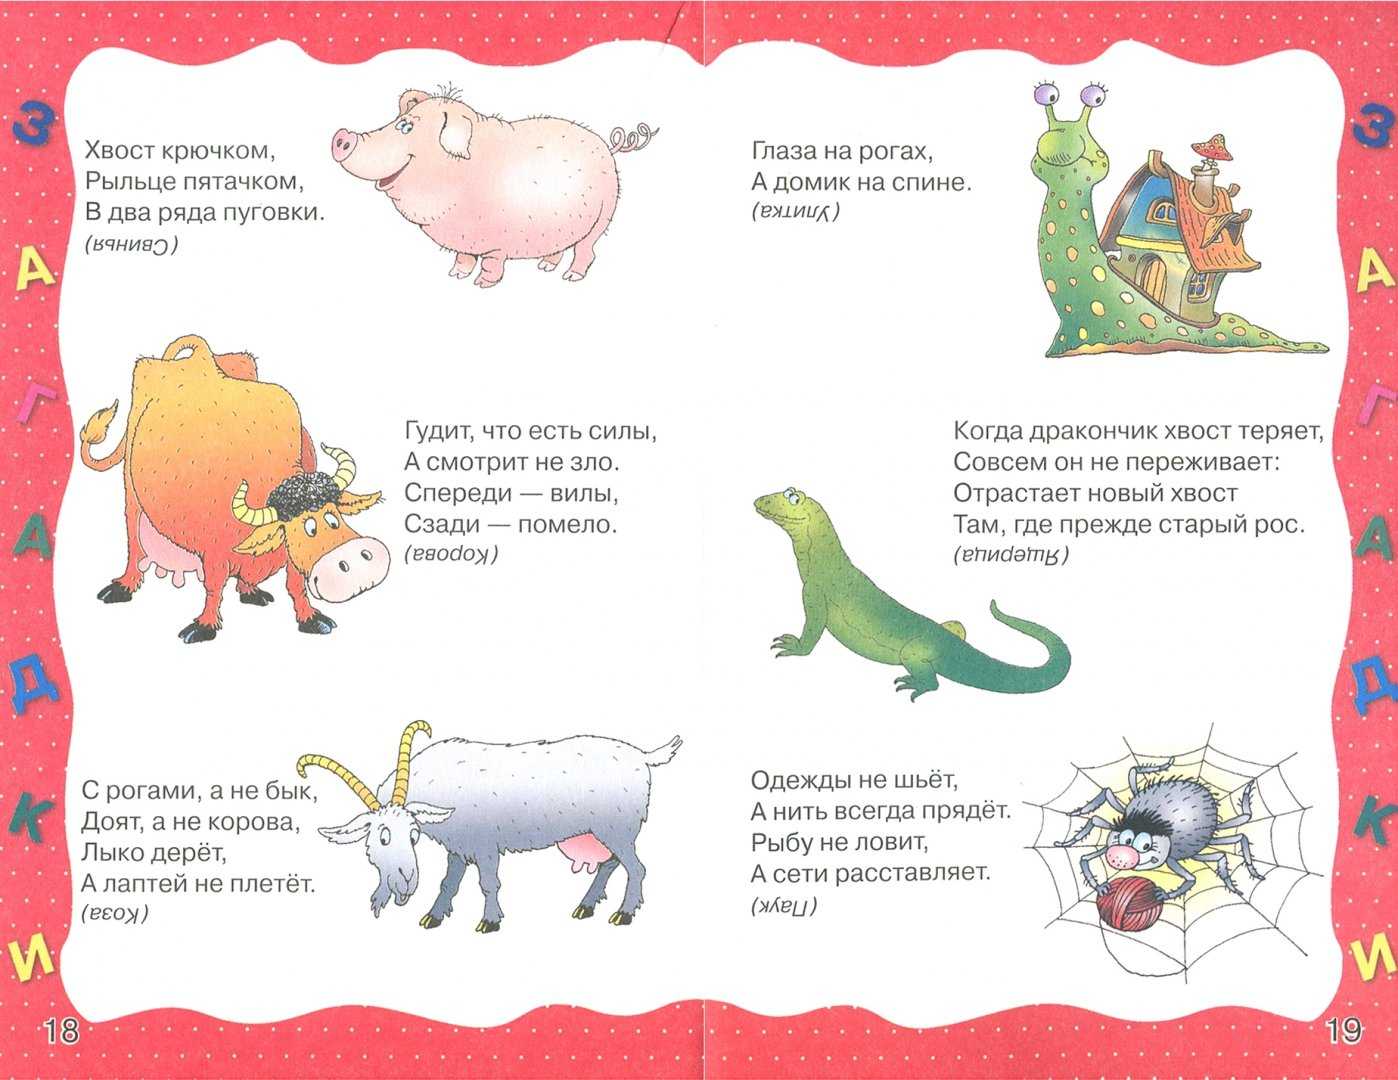 Загадки для детей 5-6 лет: 100 интересных и смешных загадок